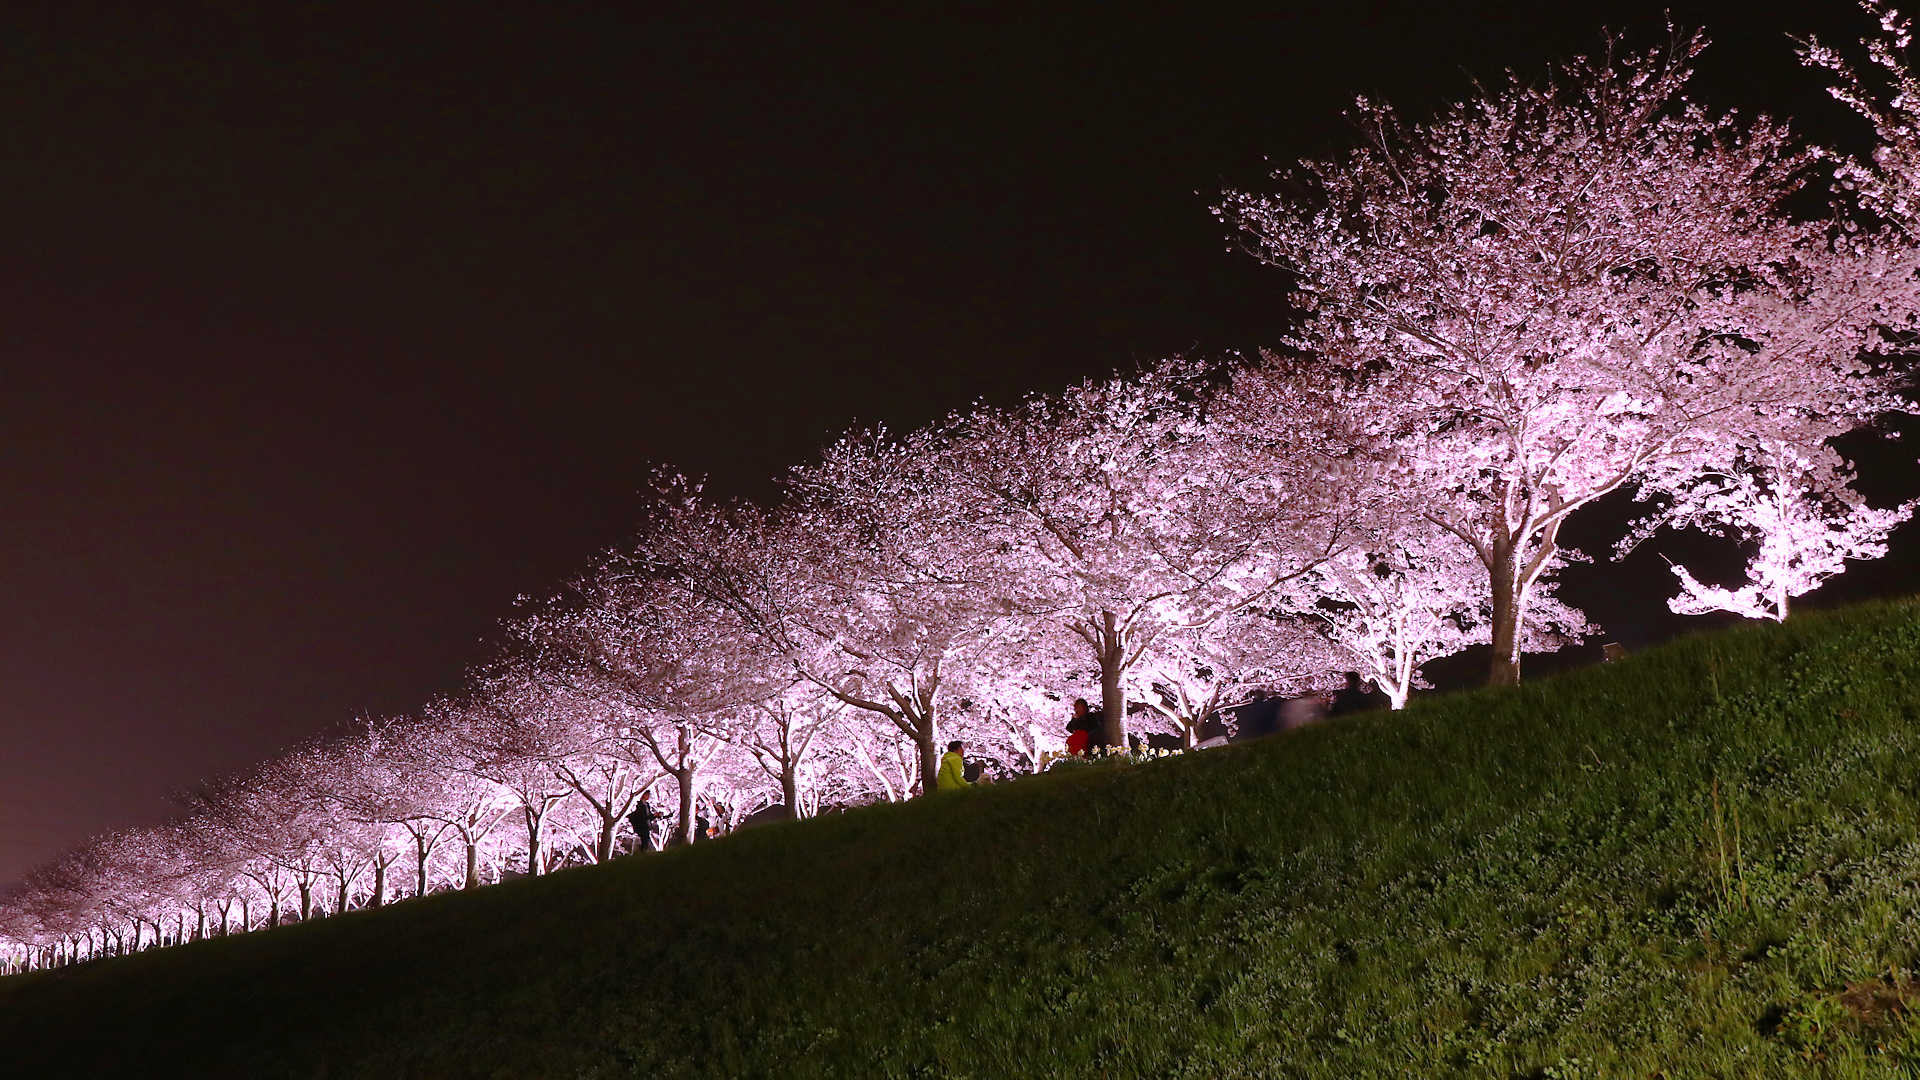 おの桜づつみ回廊18 桜の絶景 西日本最大級の桜並木